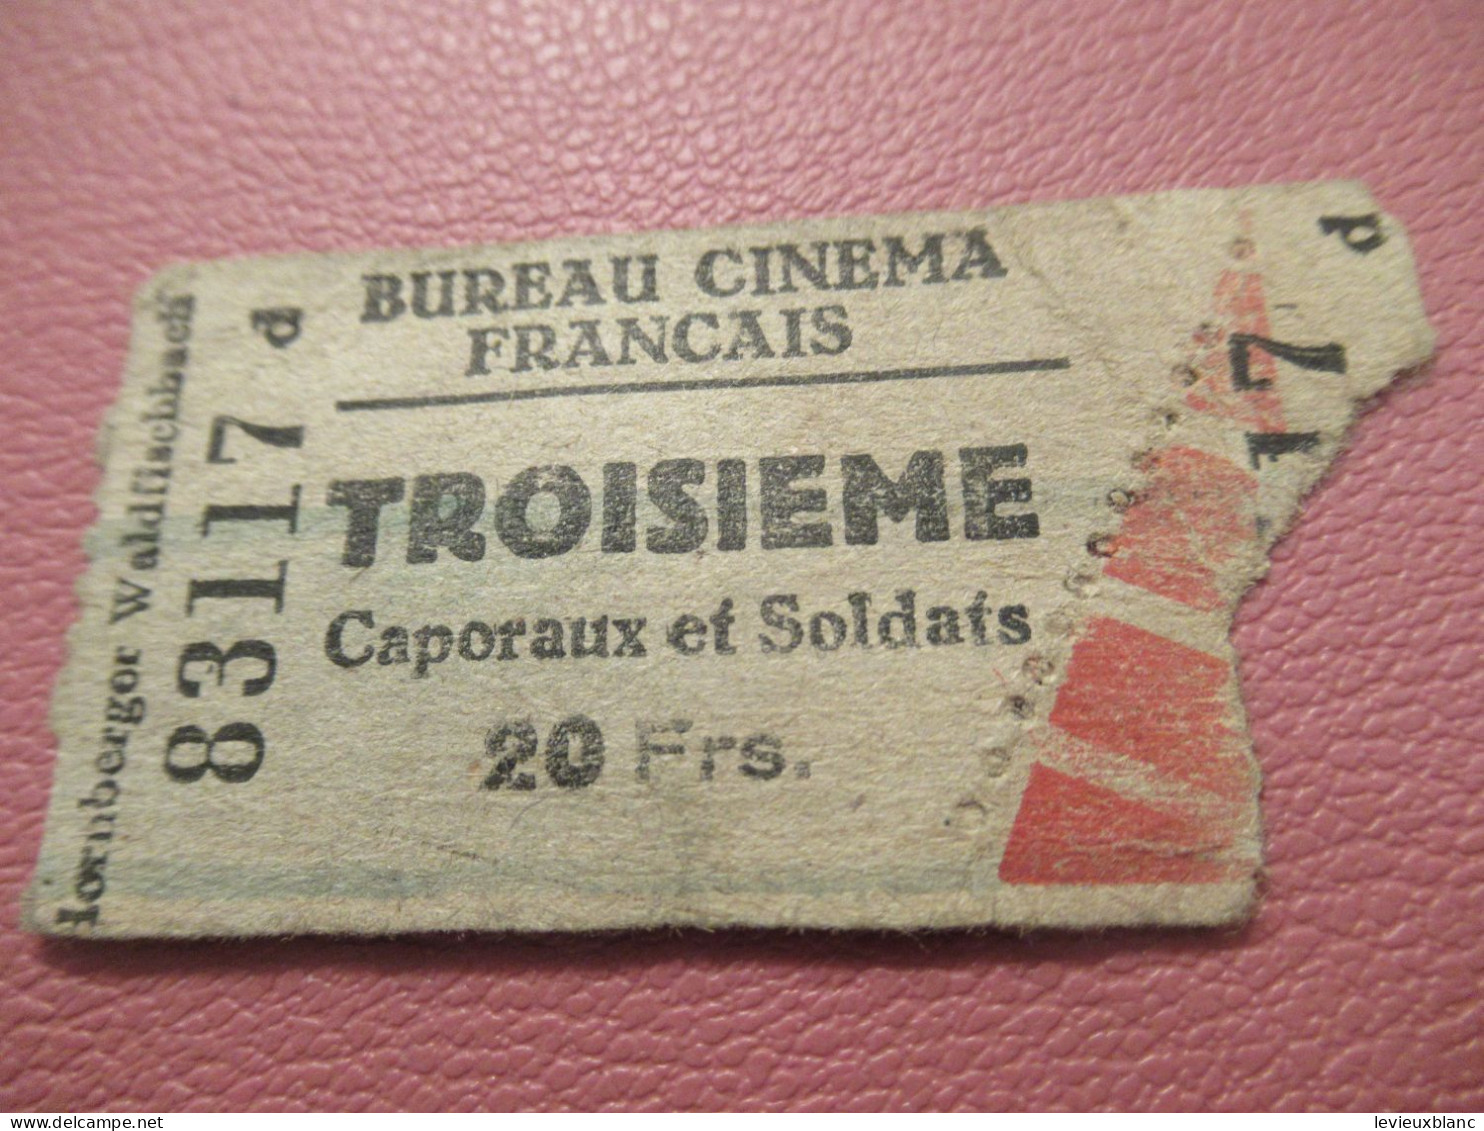 France / BUREAU CINEMA FRANCAIS/Troisième/ Caporaux Et Soldats /Lornberger Waldfischbach /1939-1945     TCK277 - Tickets - Vouchers